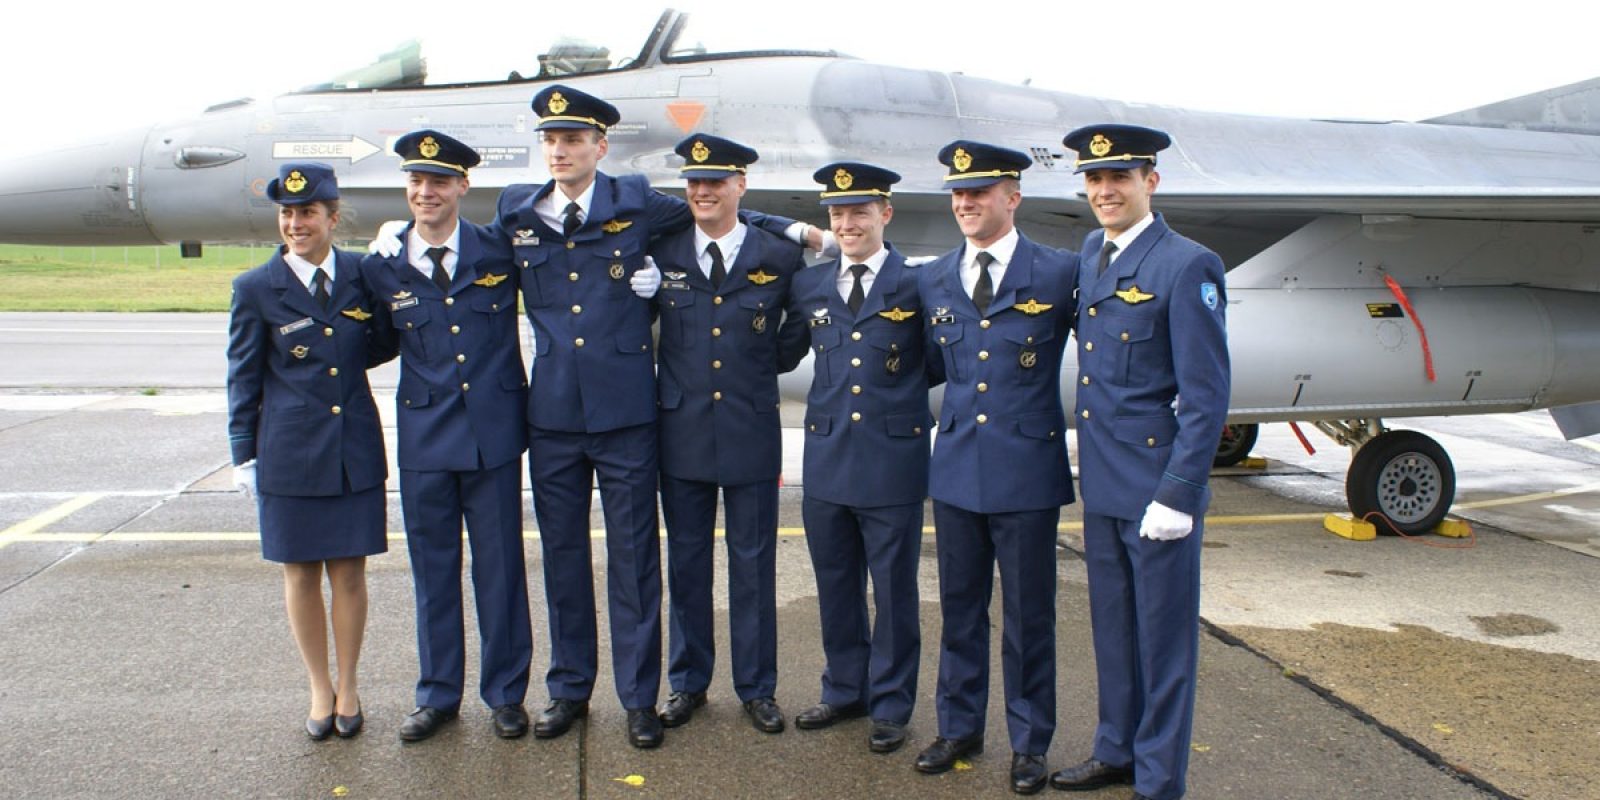 Les sept nouveaux pilotes belges montrant fièrement leurs ailes toutes neuves qui les font entrer dans le club très fermé des aviateurs.